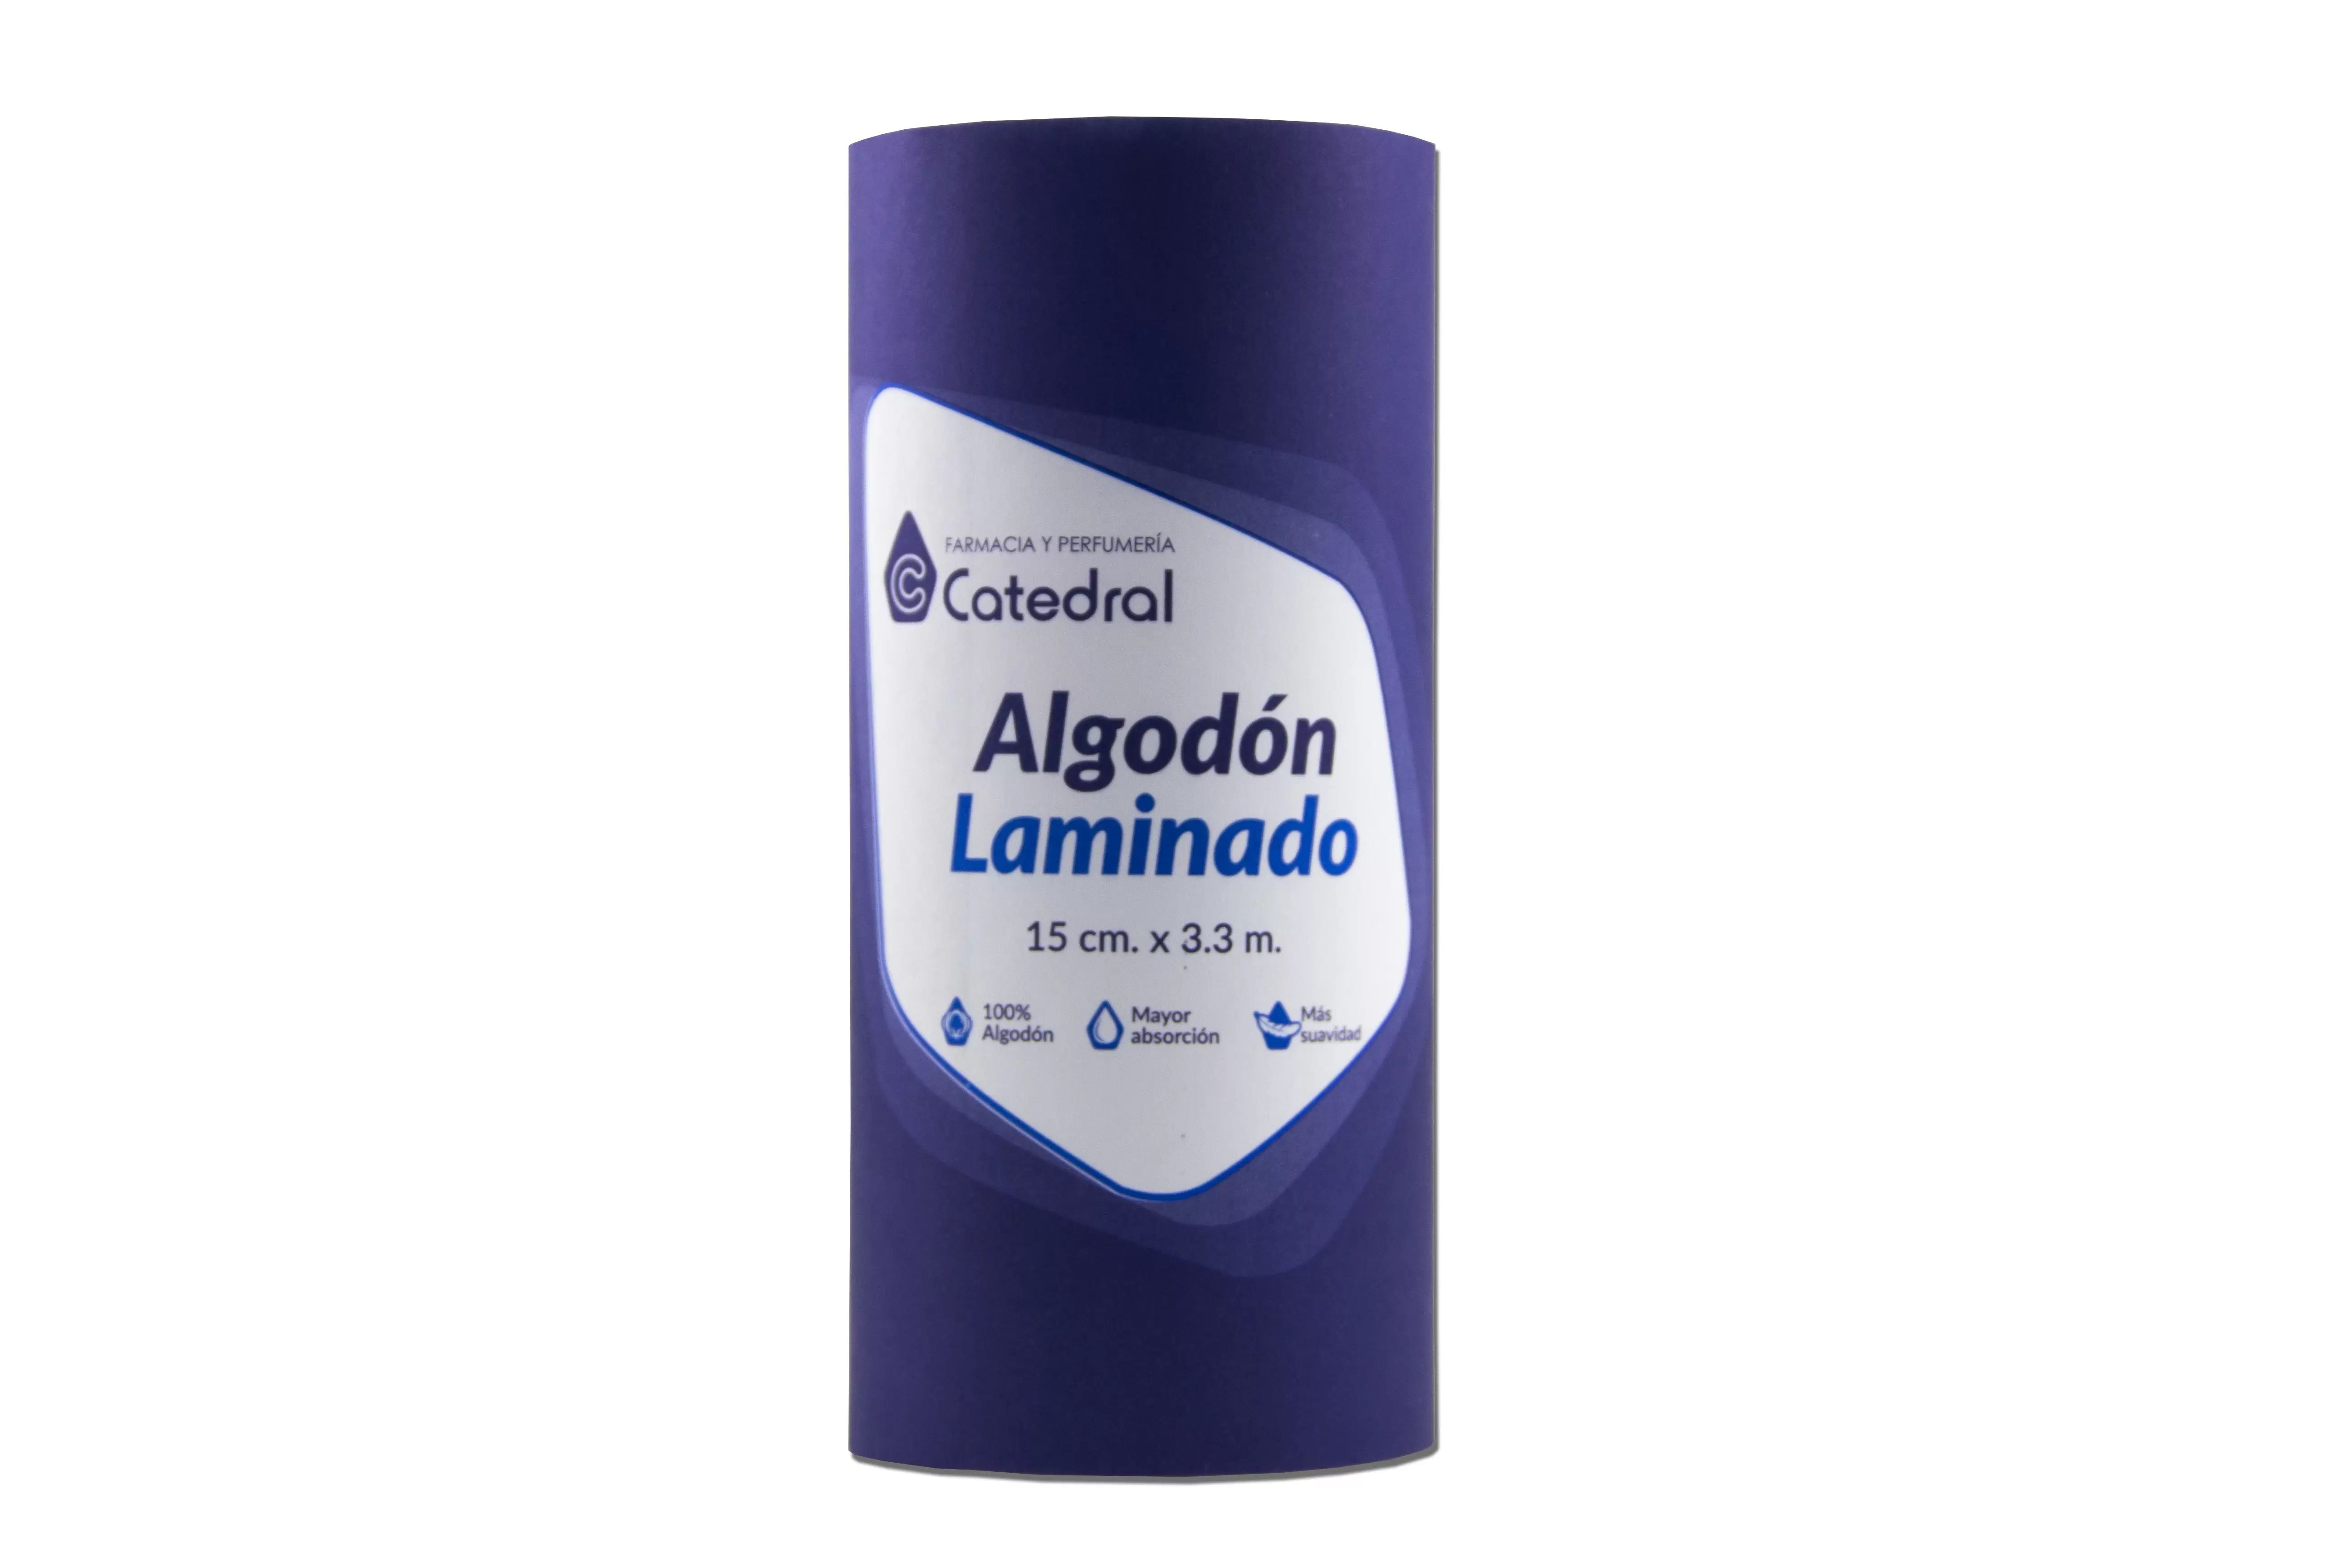 Comprar CATEDRAL ALGODON LAMIN 15CM X 3,3M Con Descuento de 10% en Farmacia y Perfumería Catedral